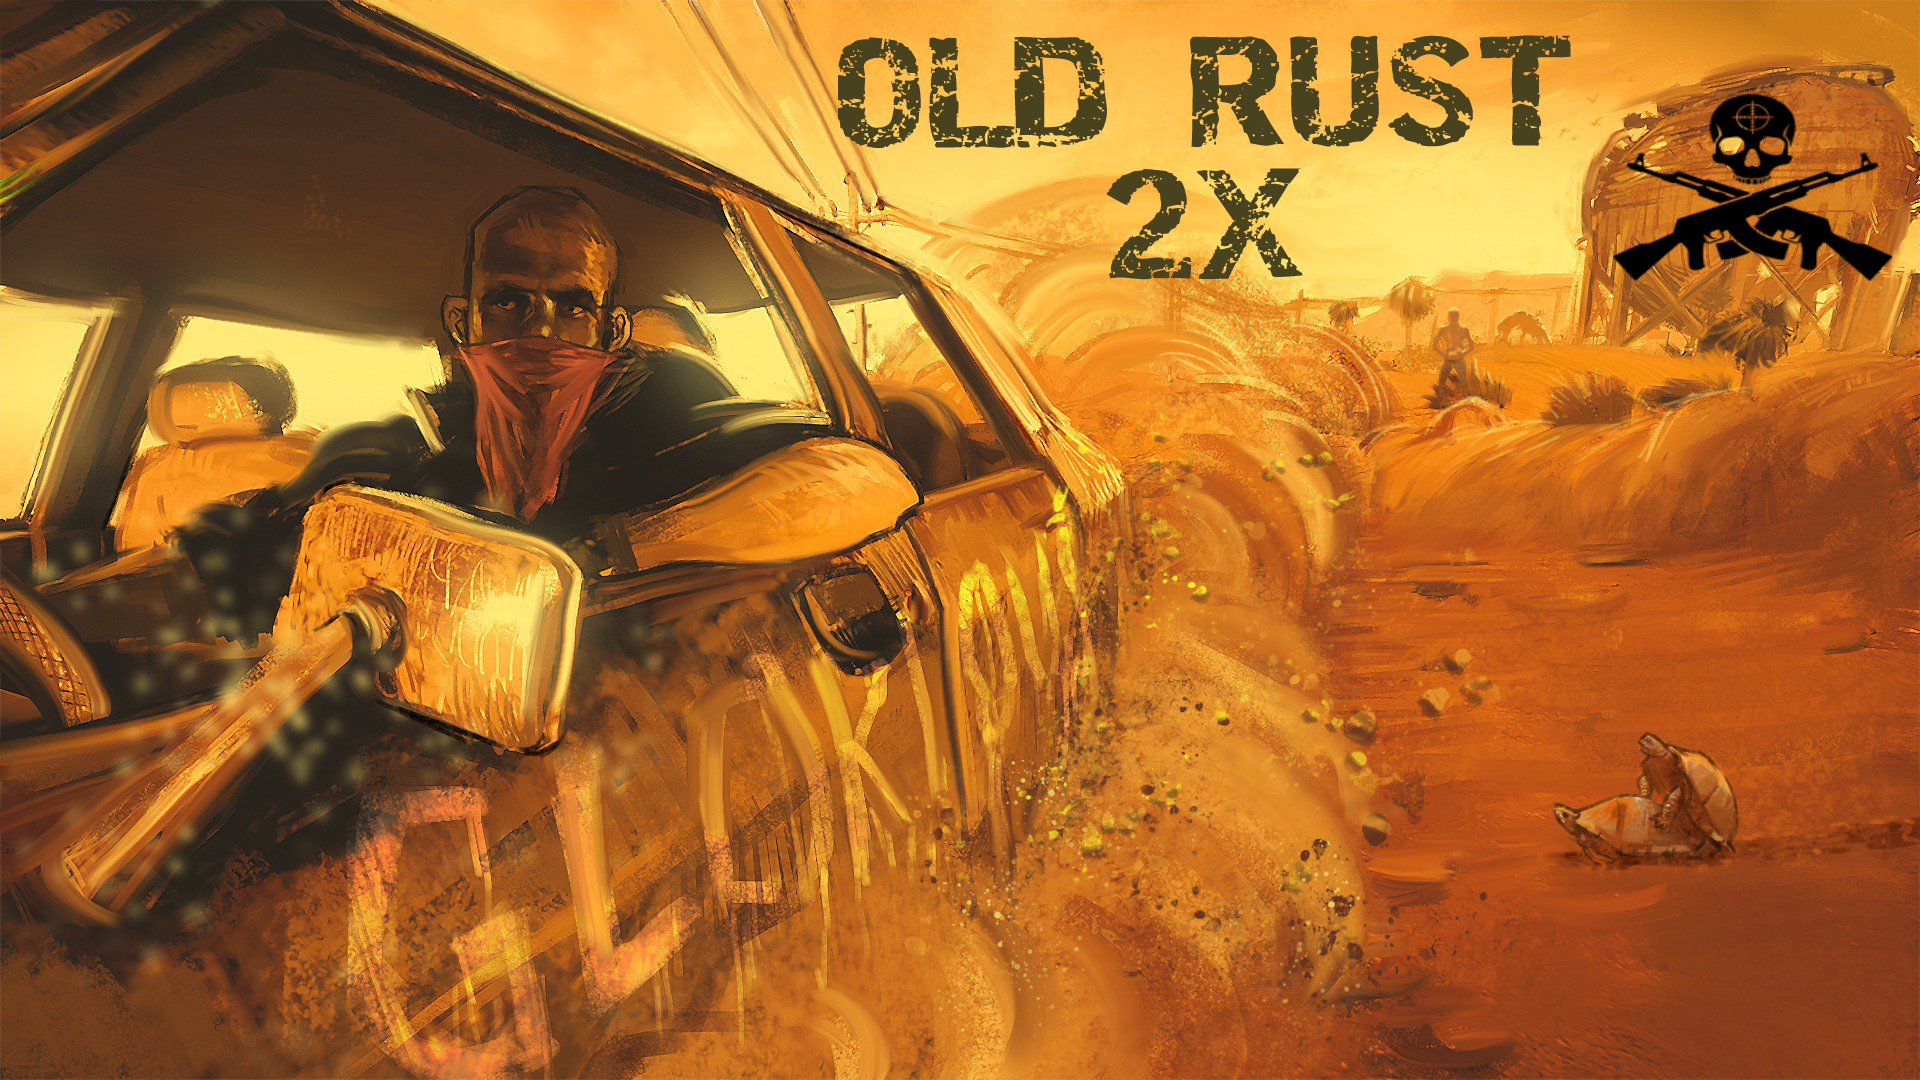 [EU]OLD Rust Vanilla [16:45 23.09][MAX 5][FULL WIPE] - 185.247.137.251:28015